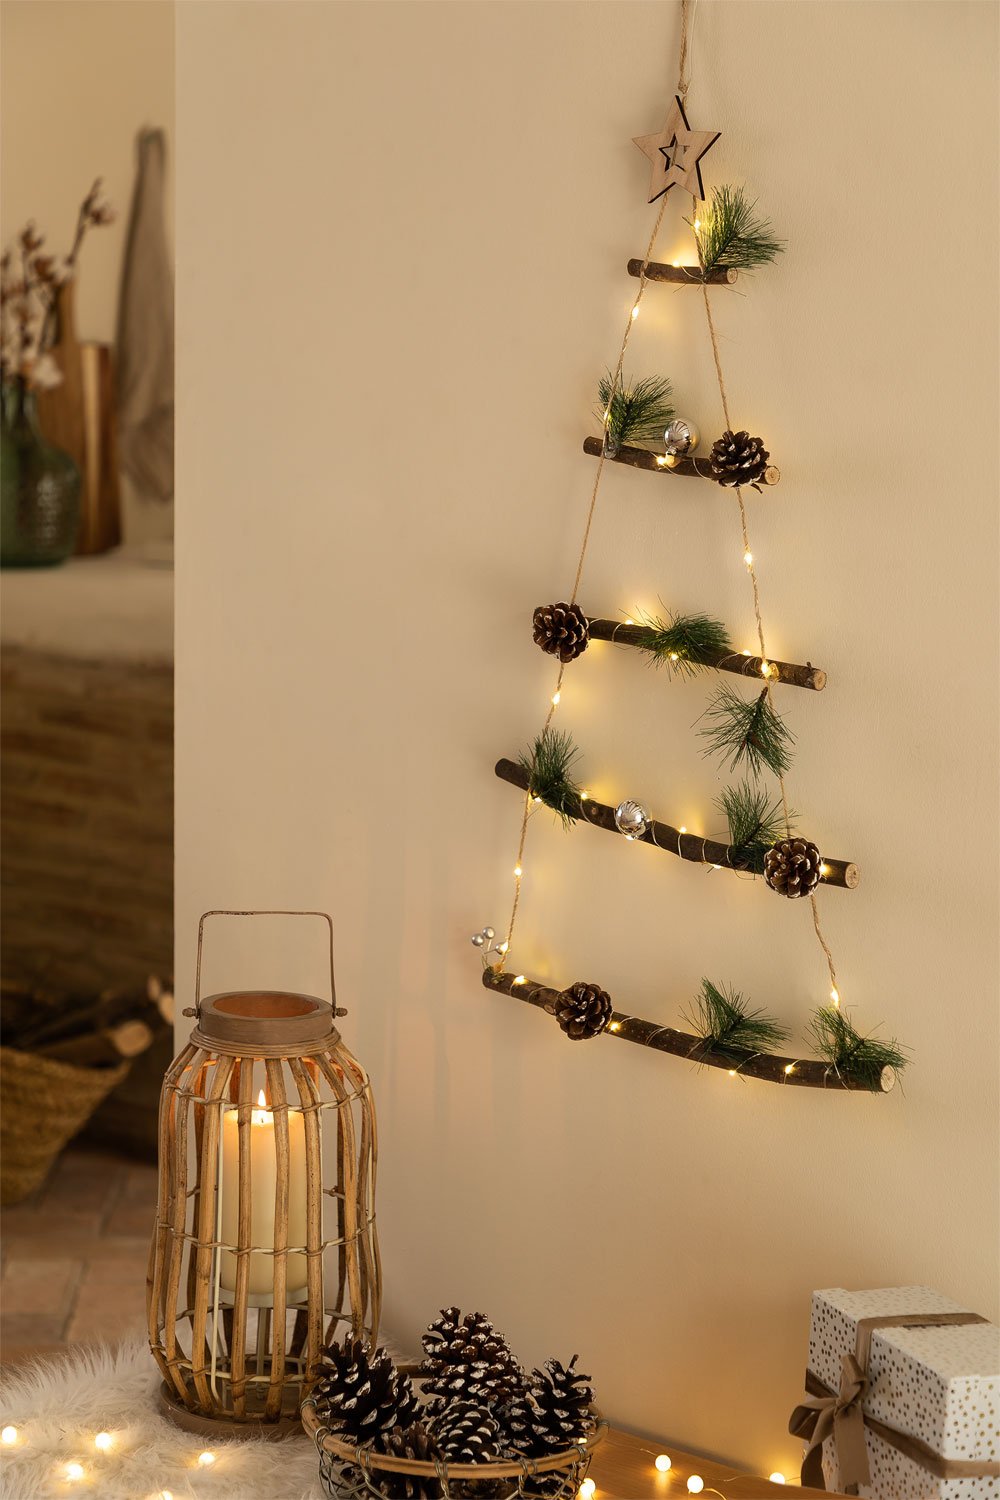 Albero di Natale da parete LED Iber, immagine della galleria 1